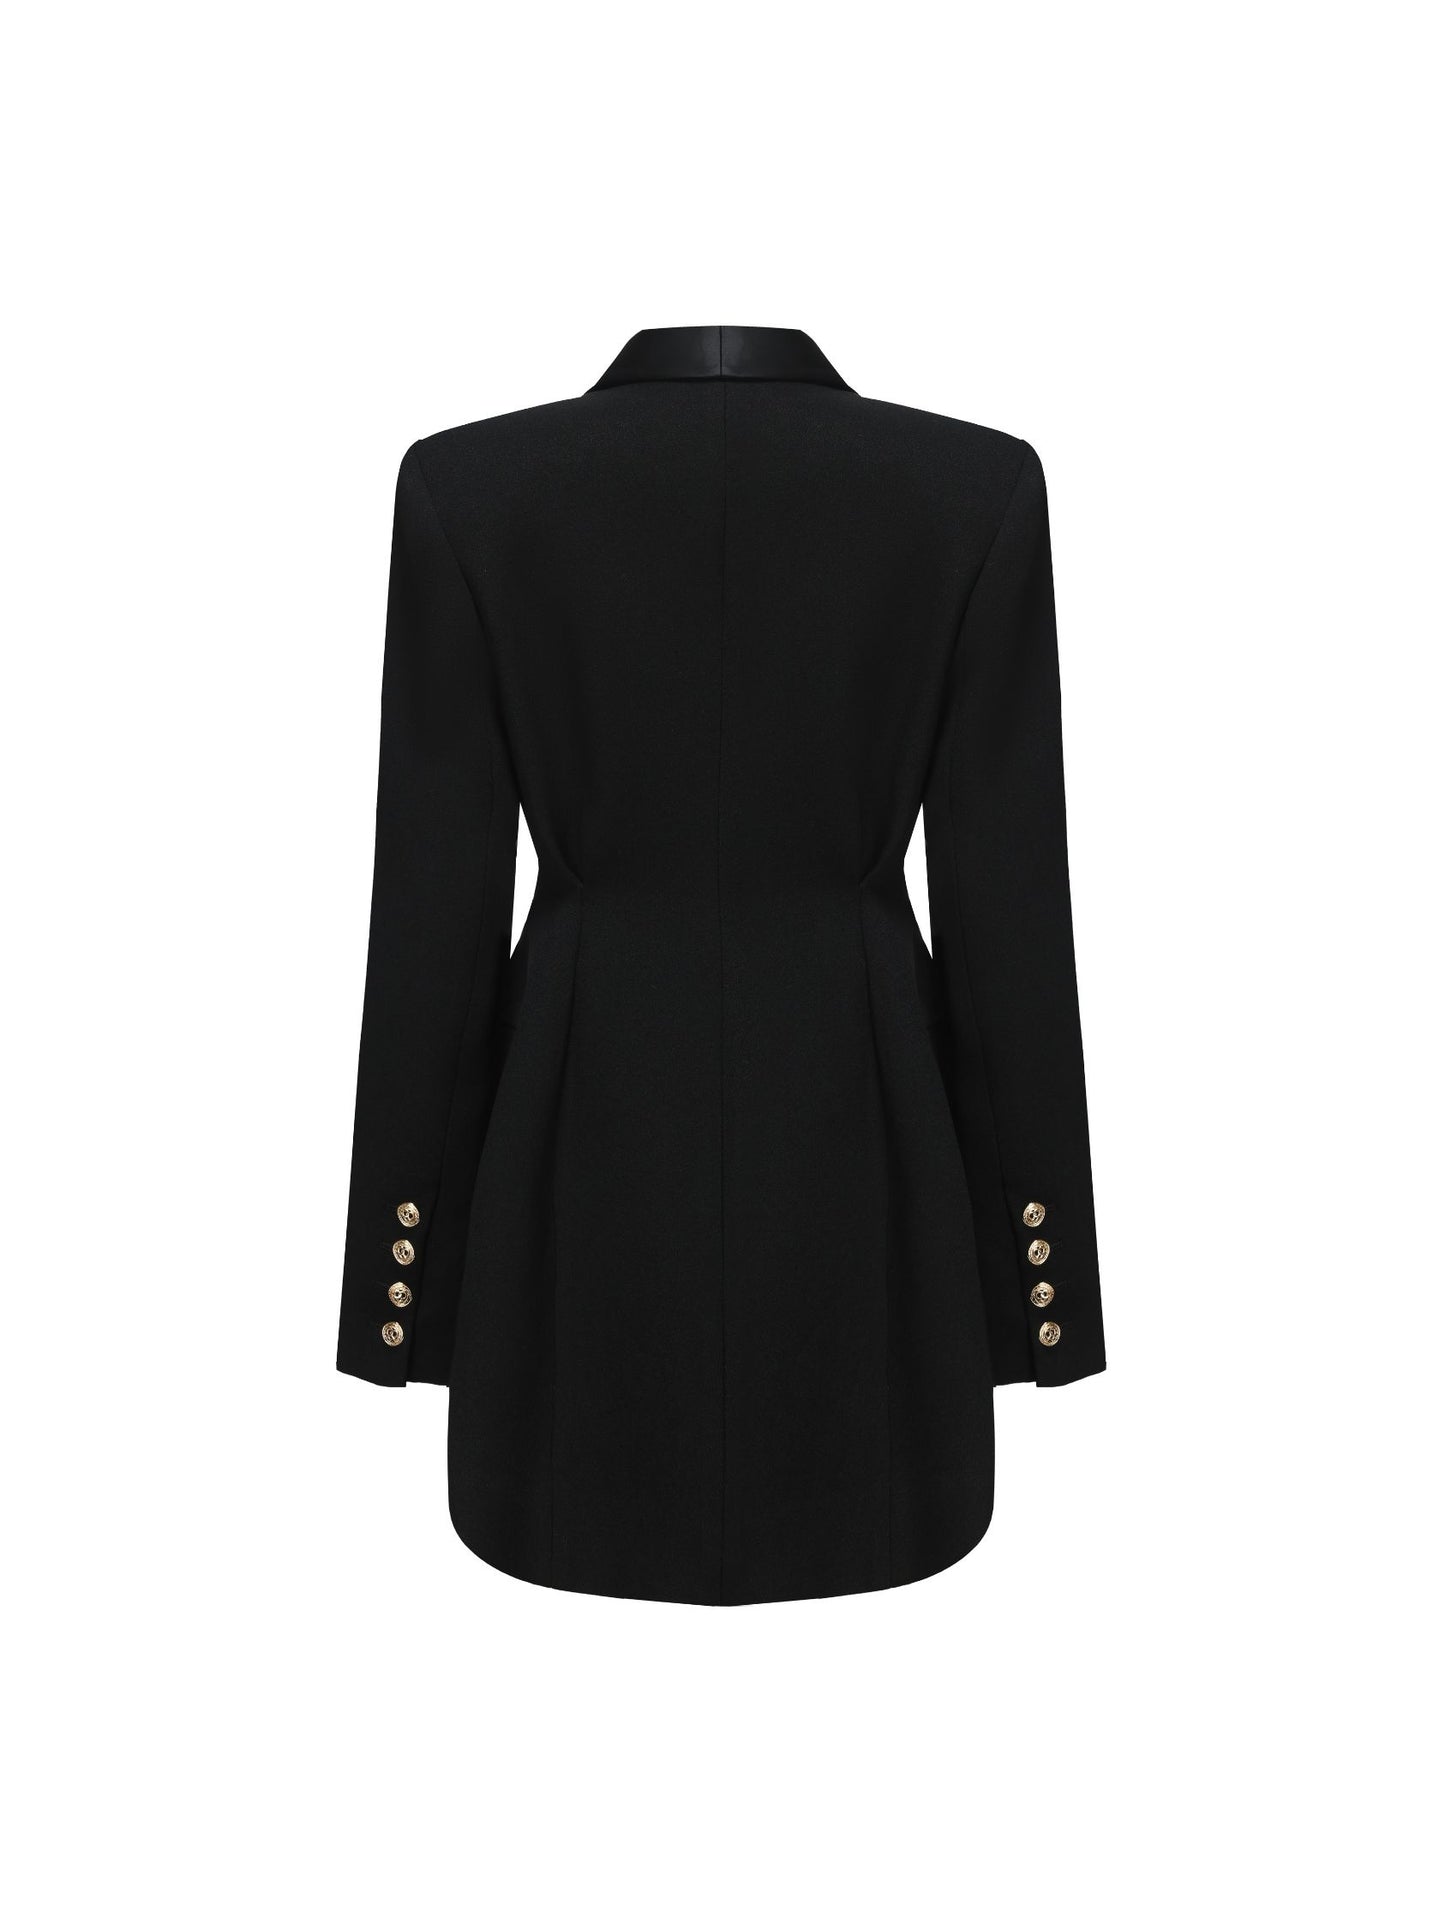 Sasha Suit Jacket (Black)